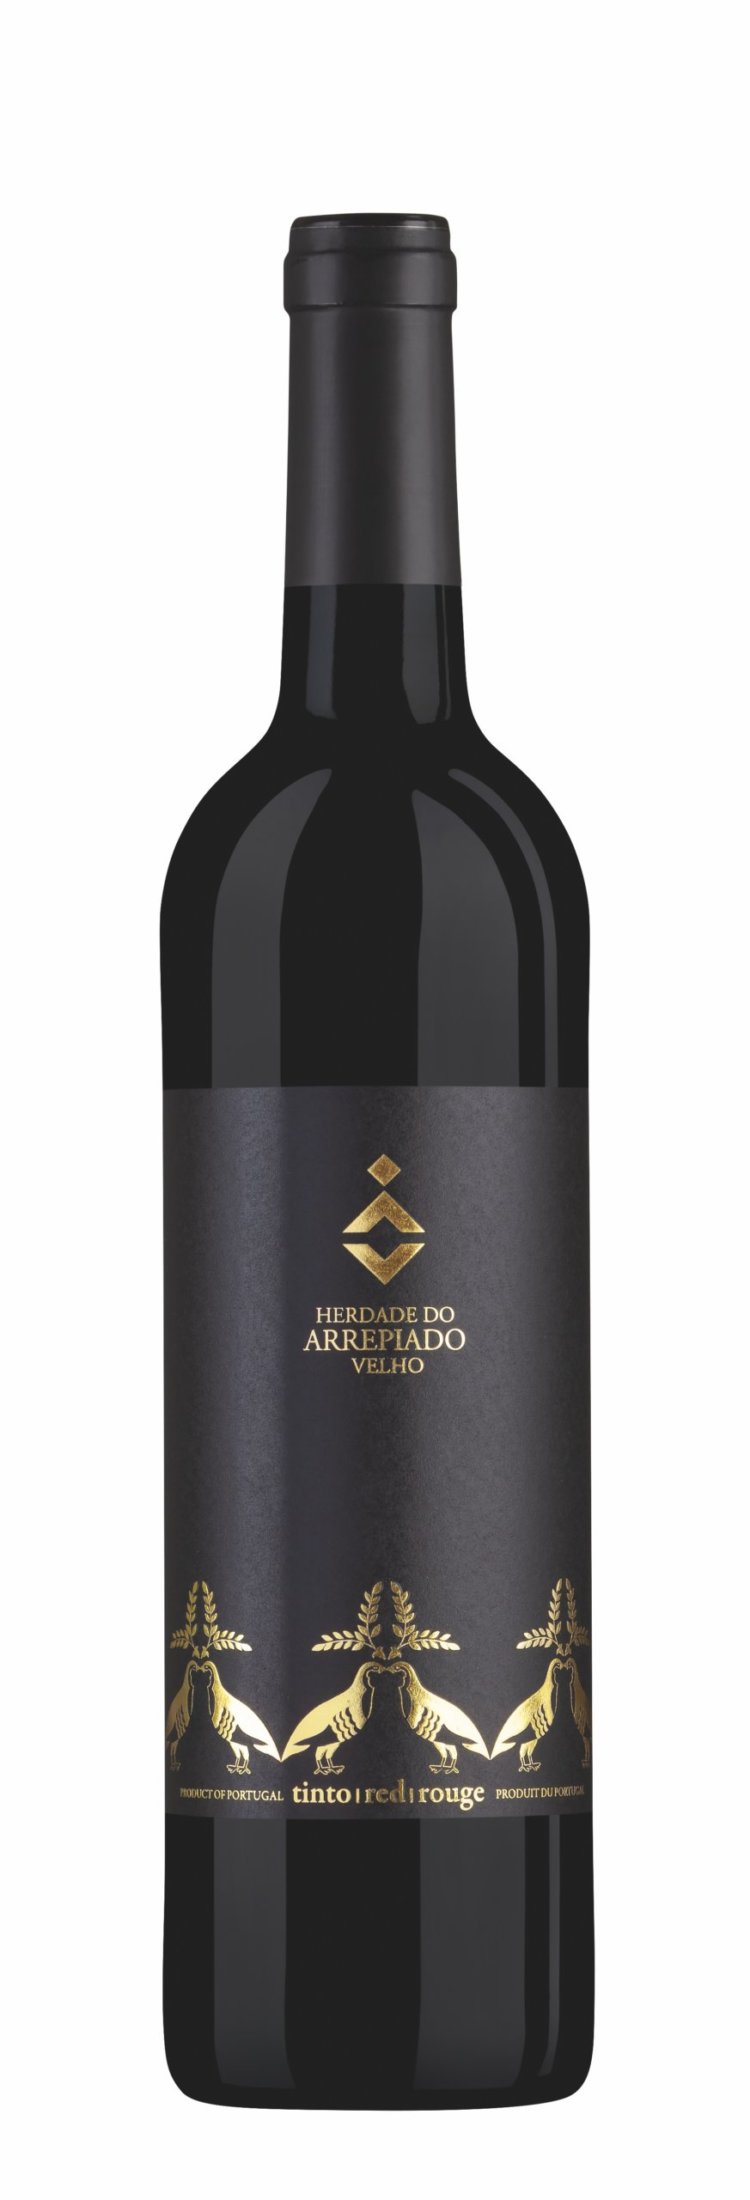 Der Velho Tinto ist ein portugiesischer Rotwein aus der Region Alentejo.